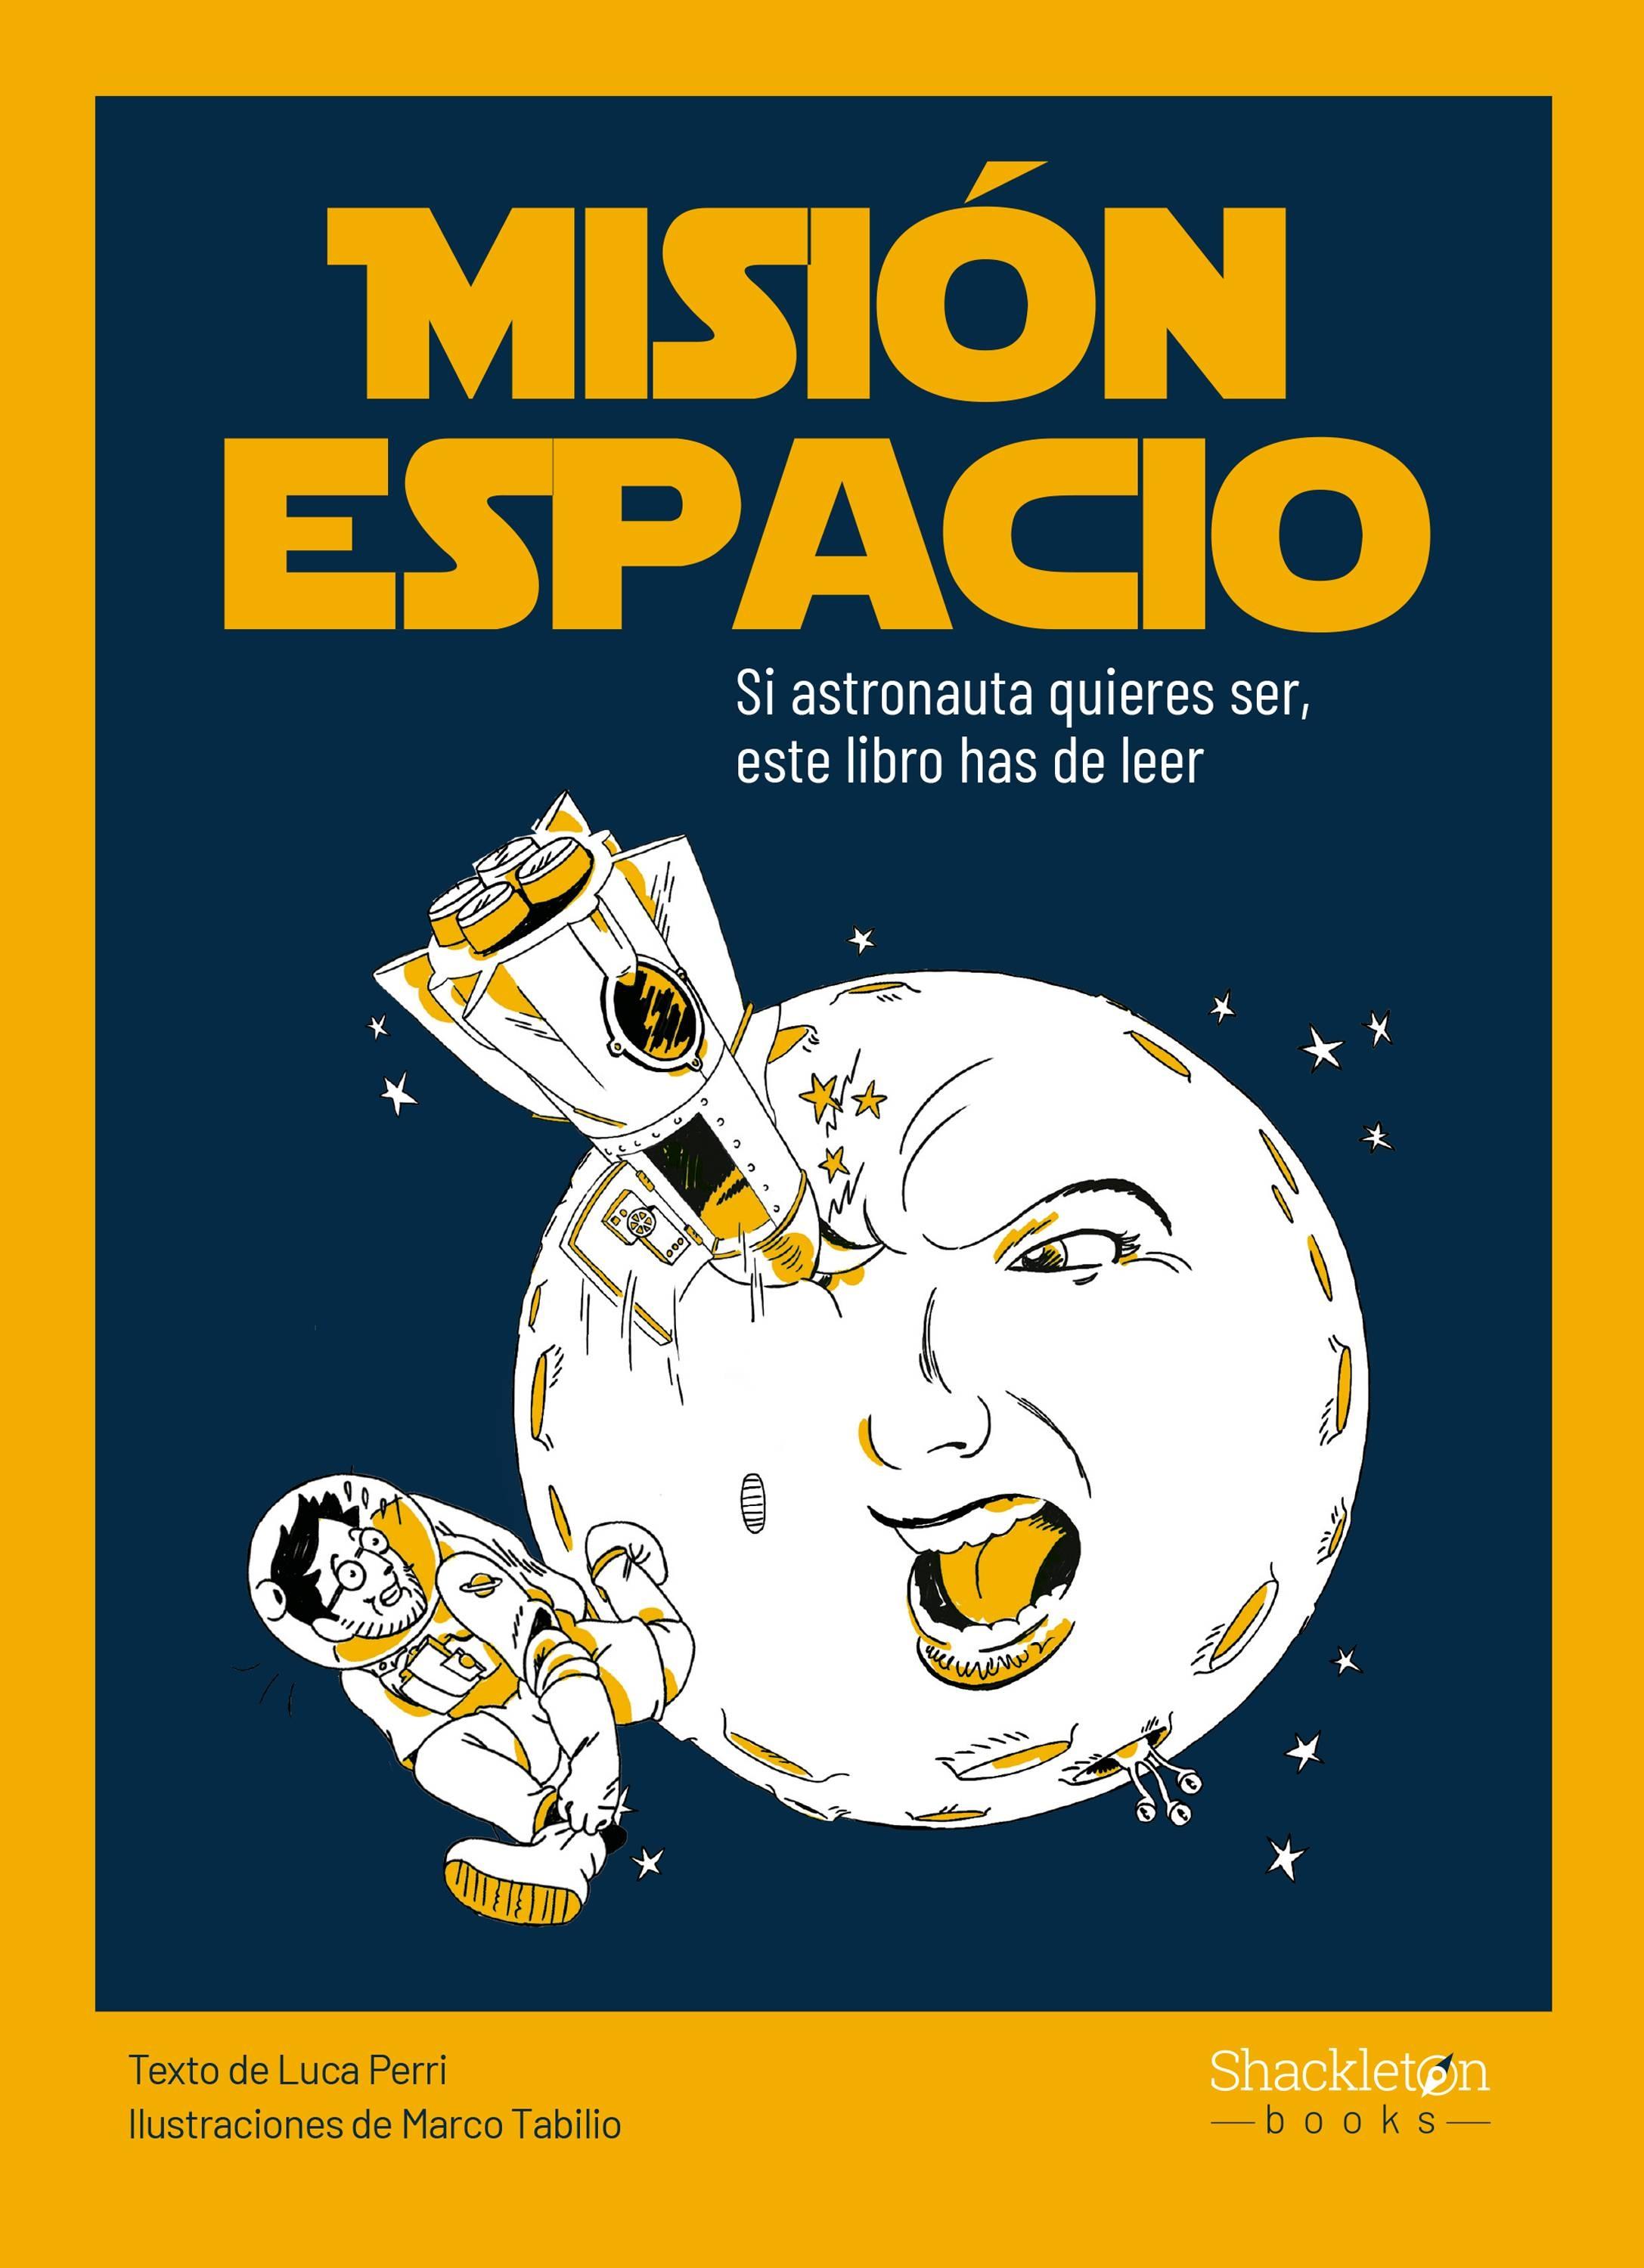 Misión espacio "Si austronauta quieres ser, este libro has de leer"